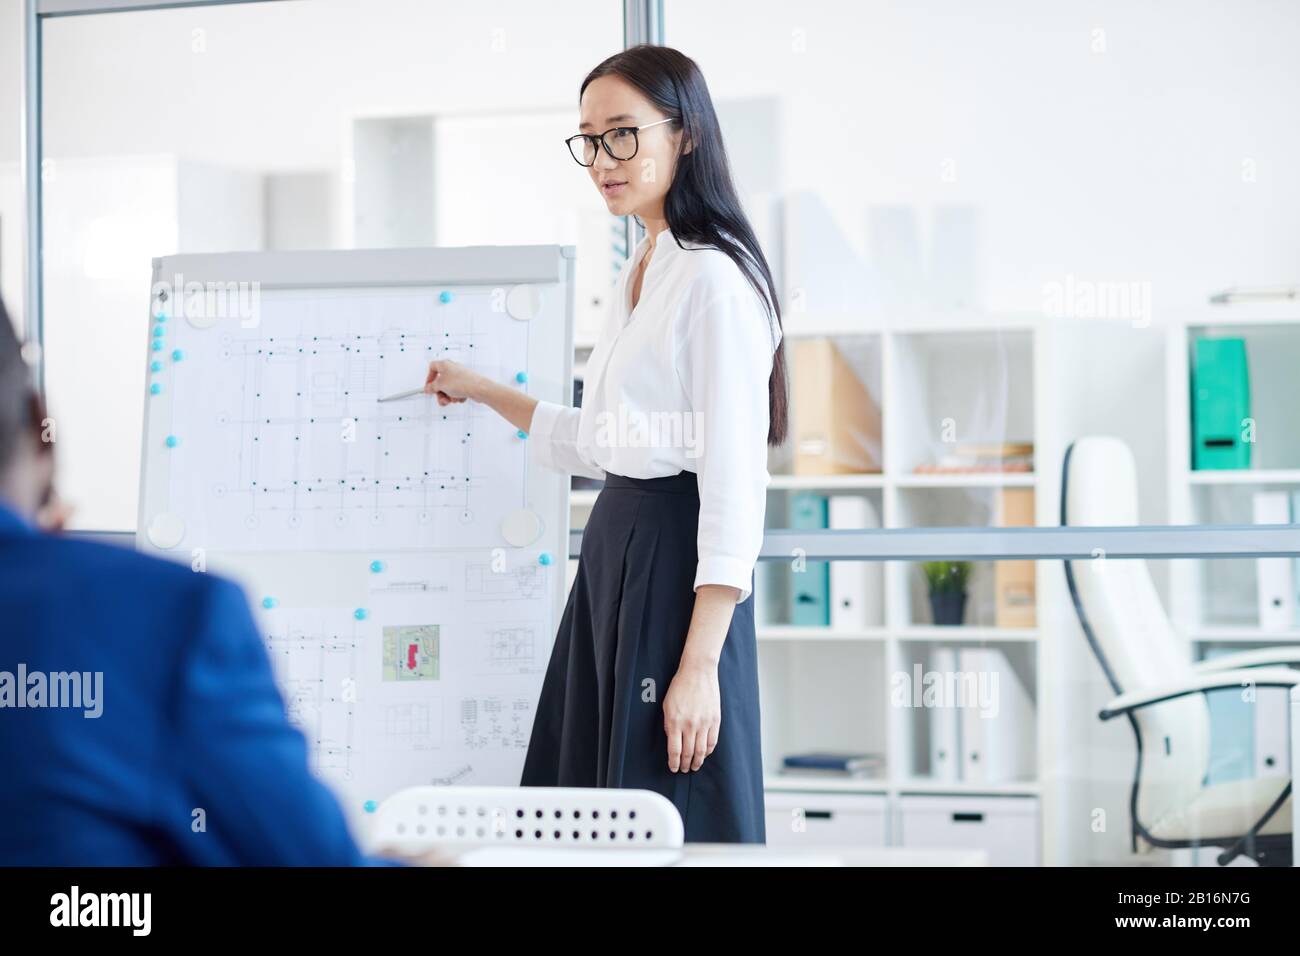 Portrait junger asiatischer Geschäftsfrau, die auf Whiteboard zeigt, während sie während des Meetings im Büro Designprojekt präsentiert, Copy Pace Stockfoto